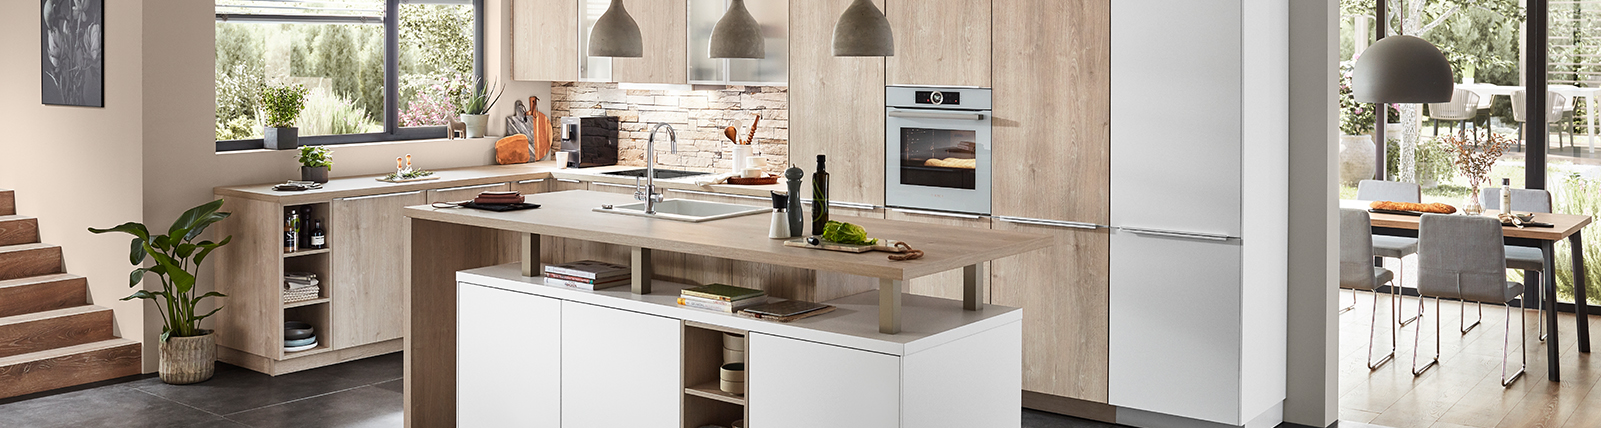 Design contemporaneo della cucina con linee pulite, elettrodomestici integrati, isola centrale e abbondante luce naturale, creando uno spazio funzionale e di stile.